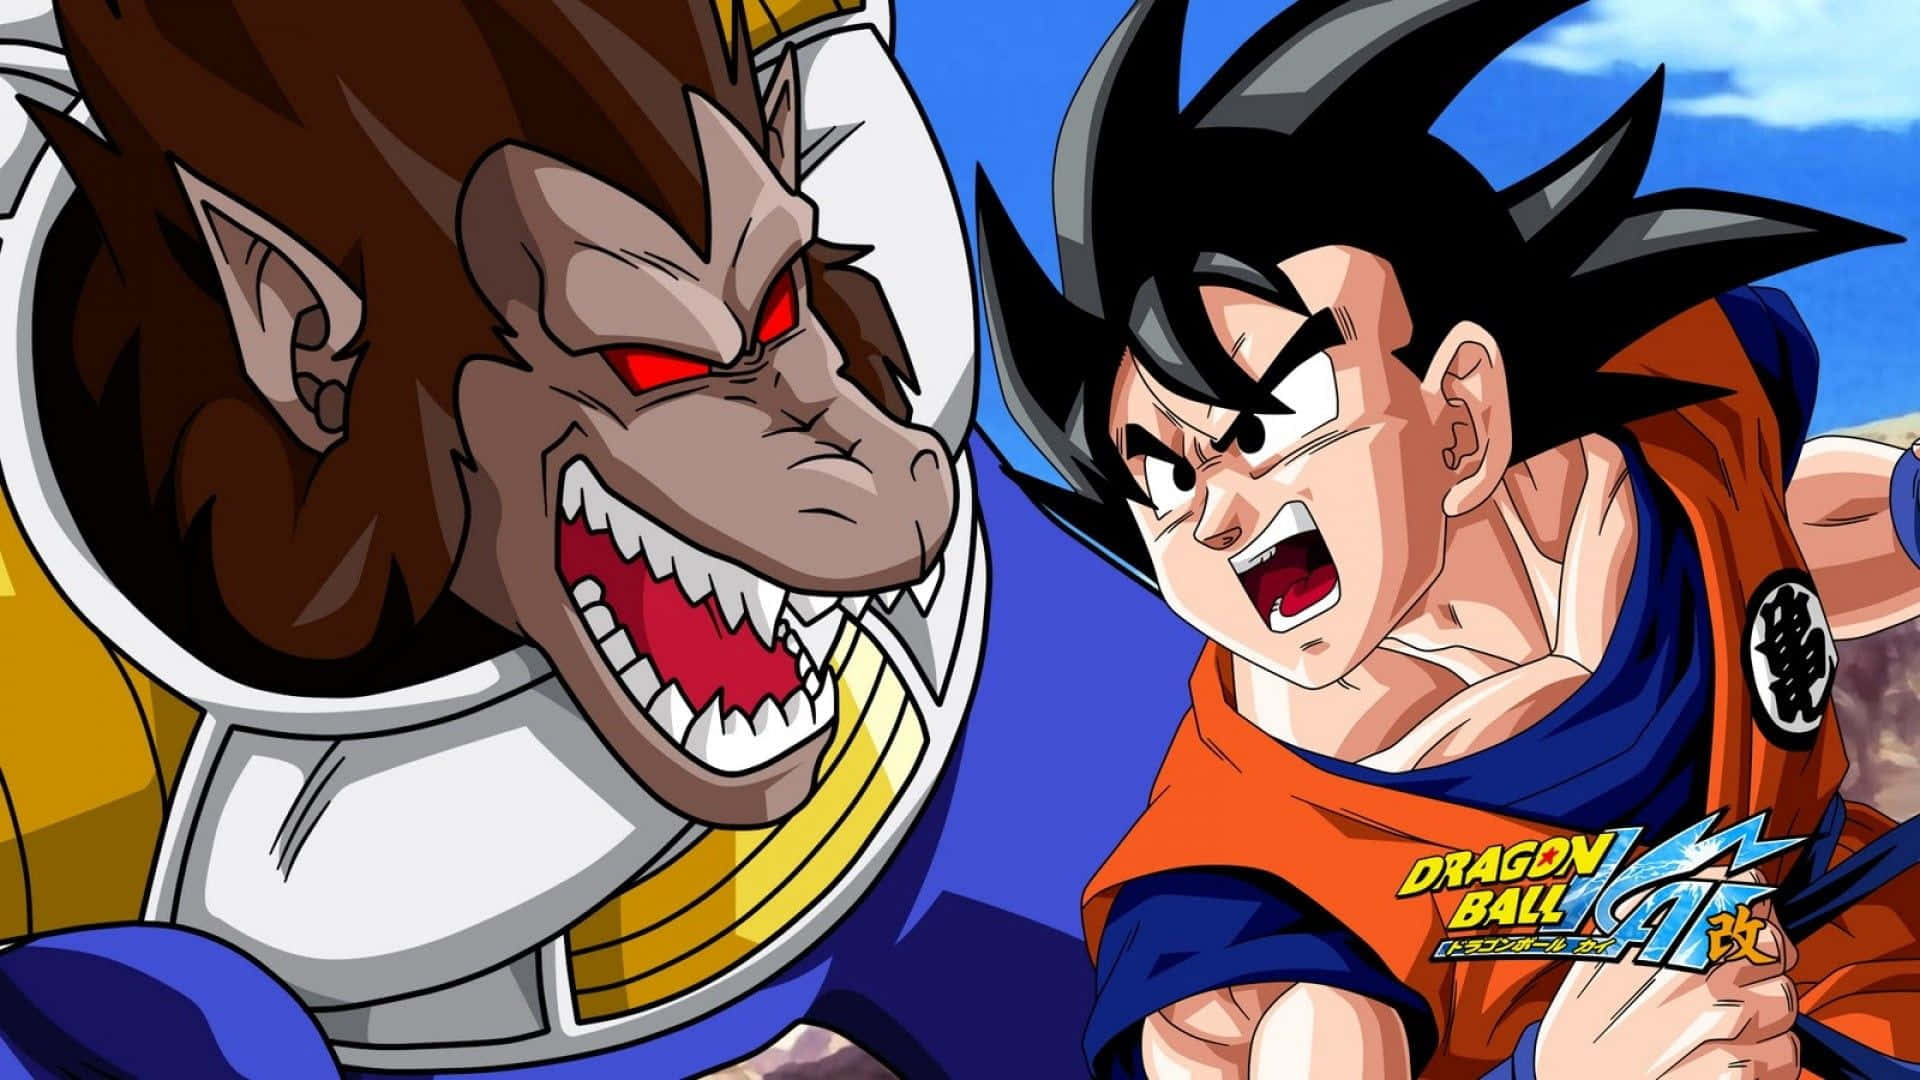 Estaardiente Escena De Dragon Ball Z Kai Muestra La Fuerza De Goku Super Saiyan. Fondo de pantalla